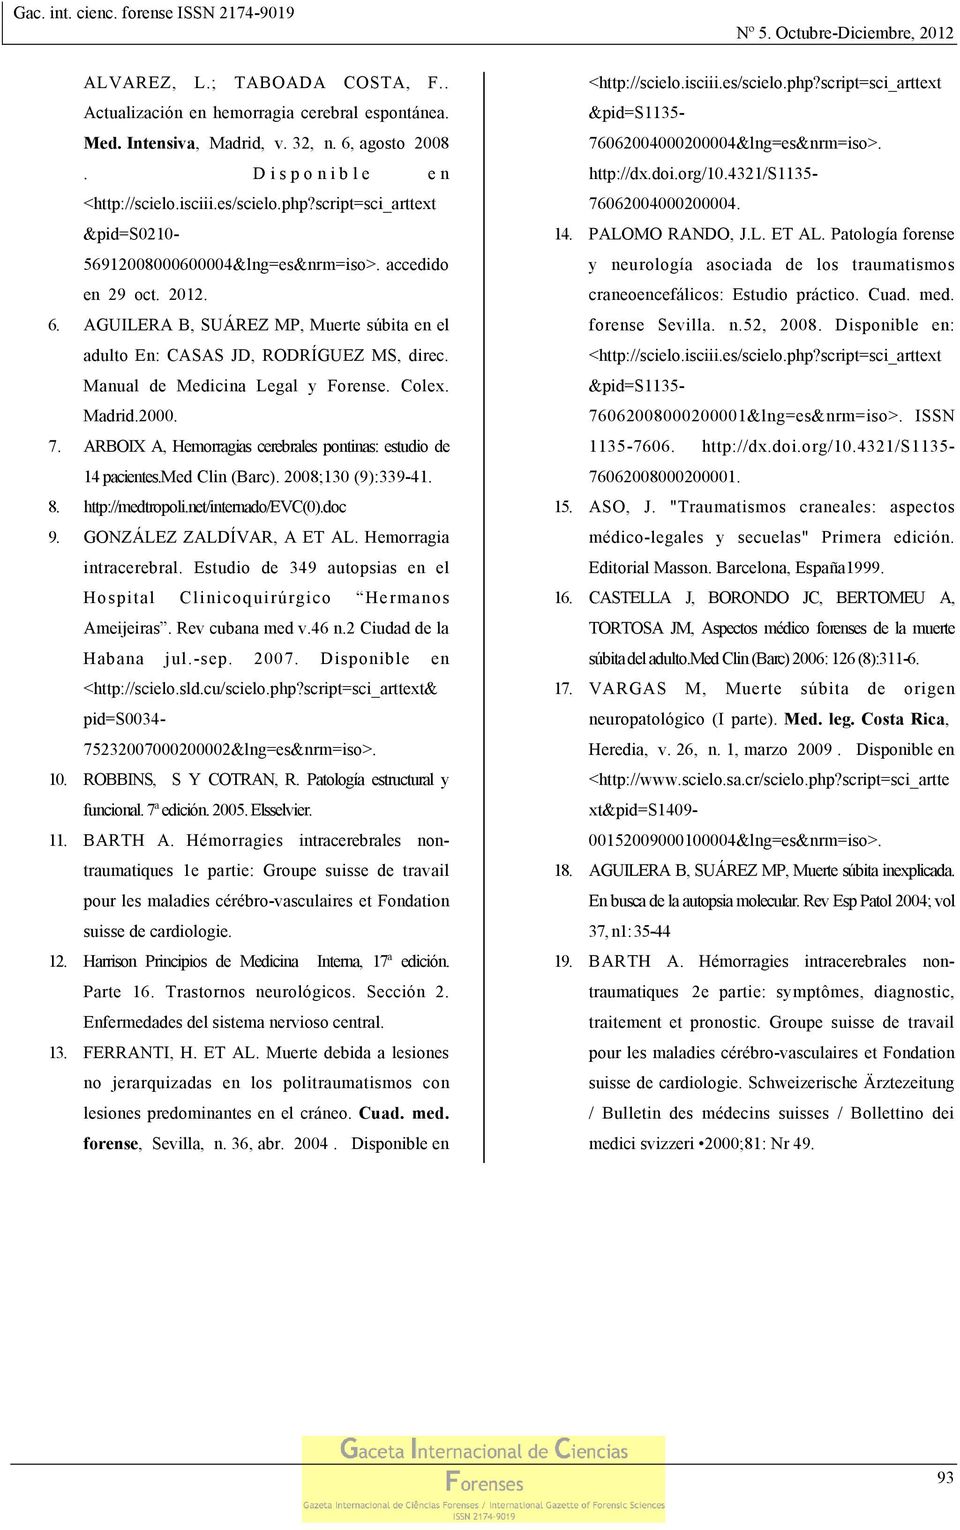 Manual de Medicina Legal y Forense. Colex. Madrid.2000. 7. ARBOIX A, Hemorragias cerebrales pontinas: estudio de 14 pacientes.med Clin (Barc). 2008;130 (9):339-41. 8. http://medtropoli.